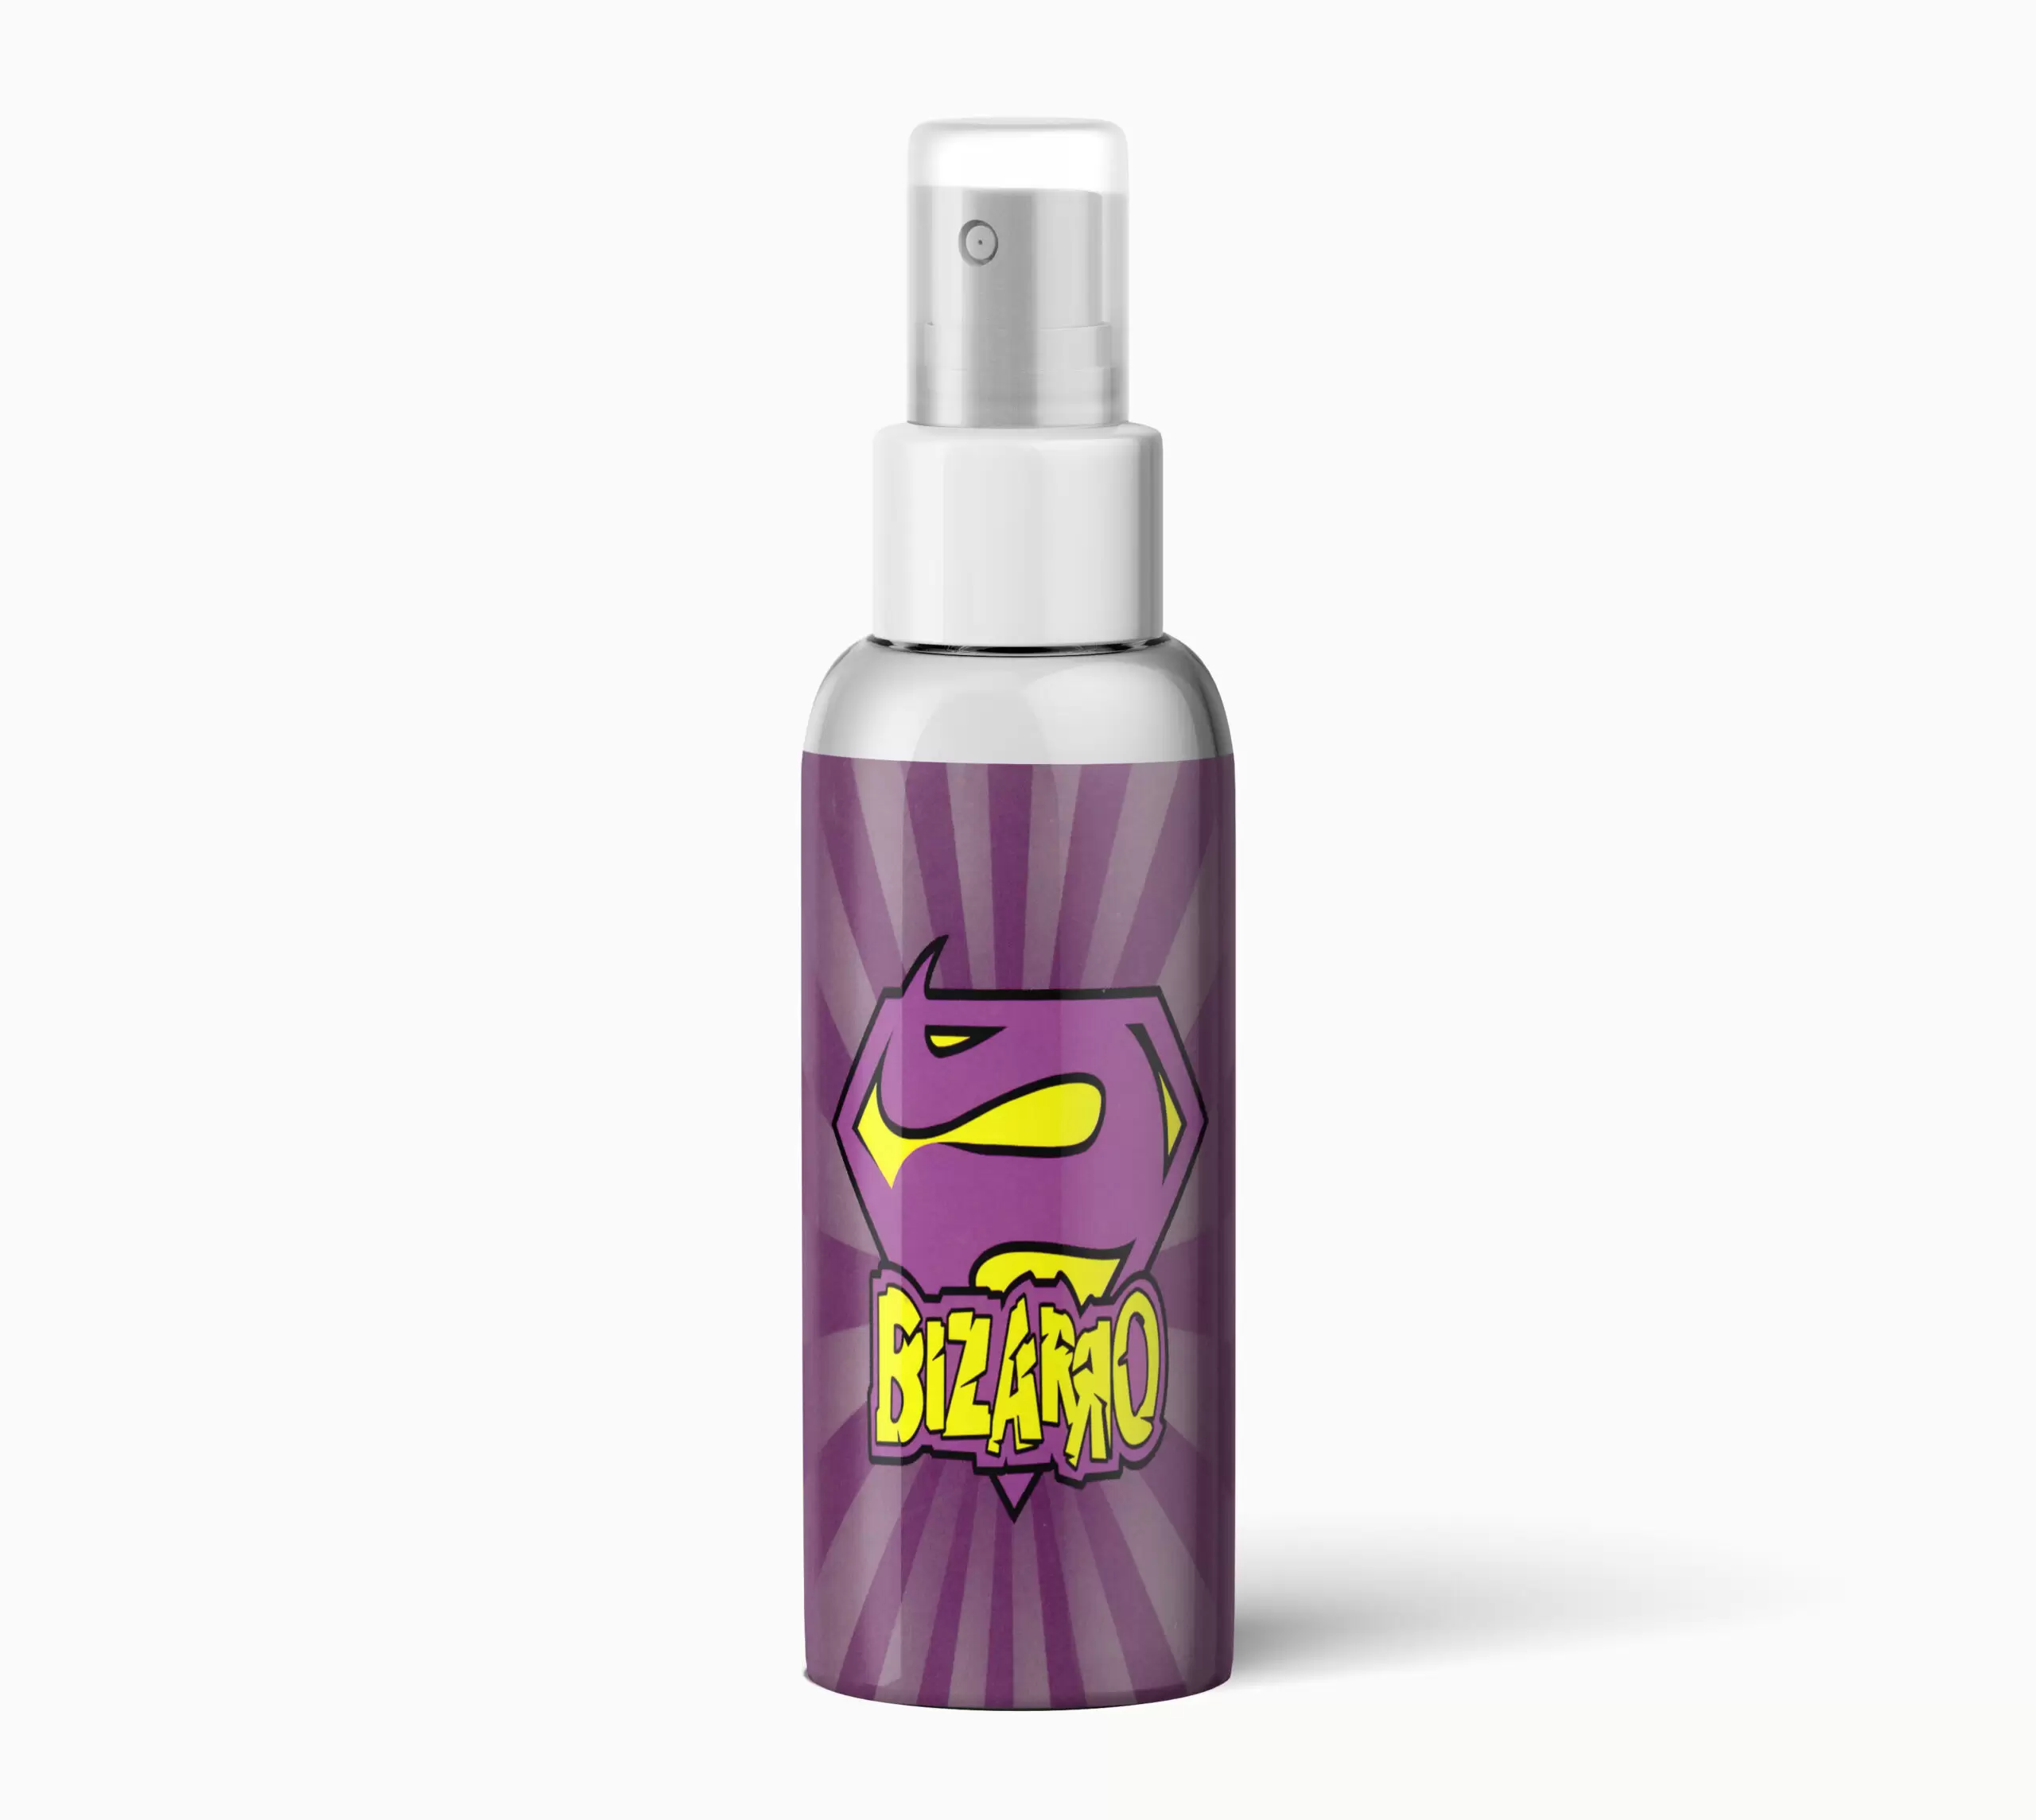 What is Bizarro K2 Spray?